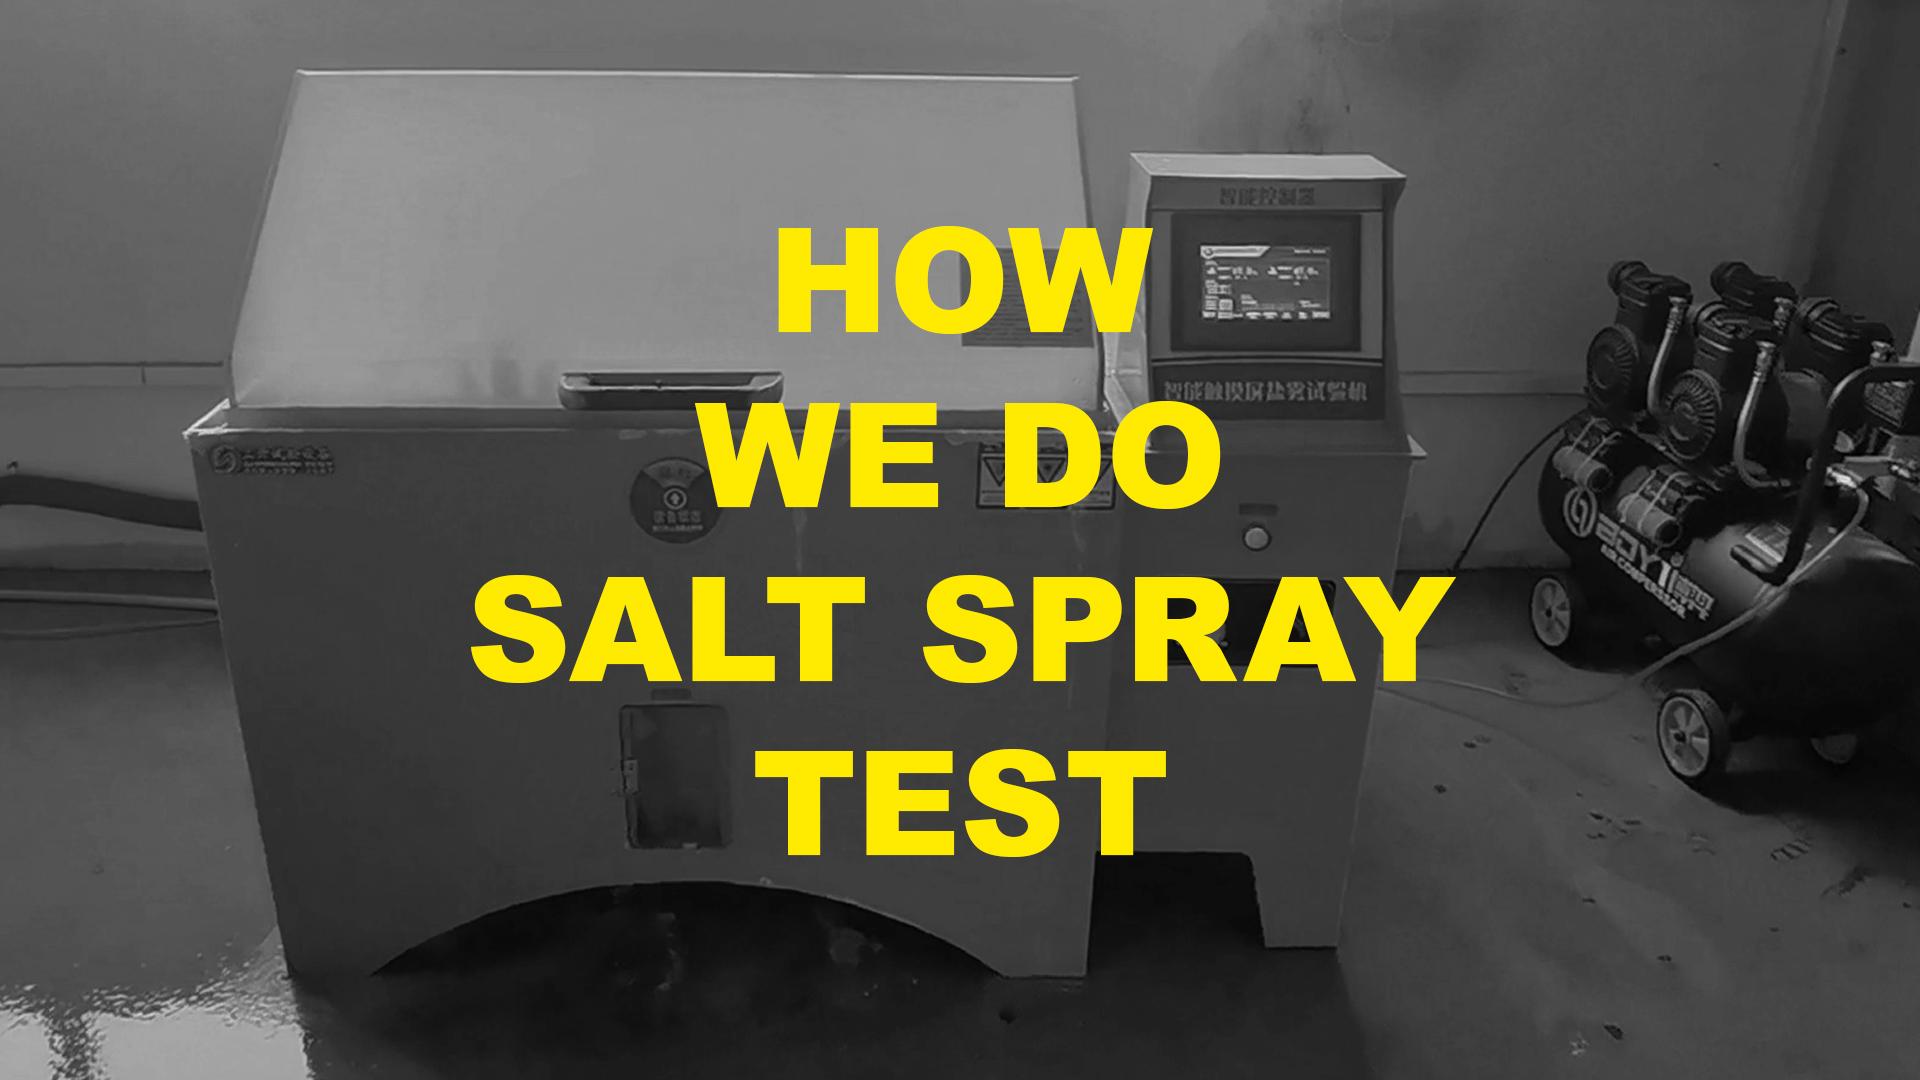 How we do salt spray test?